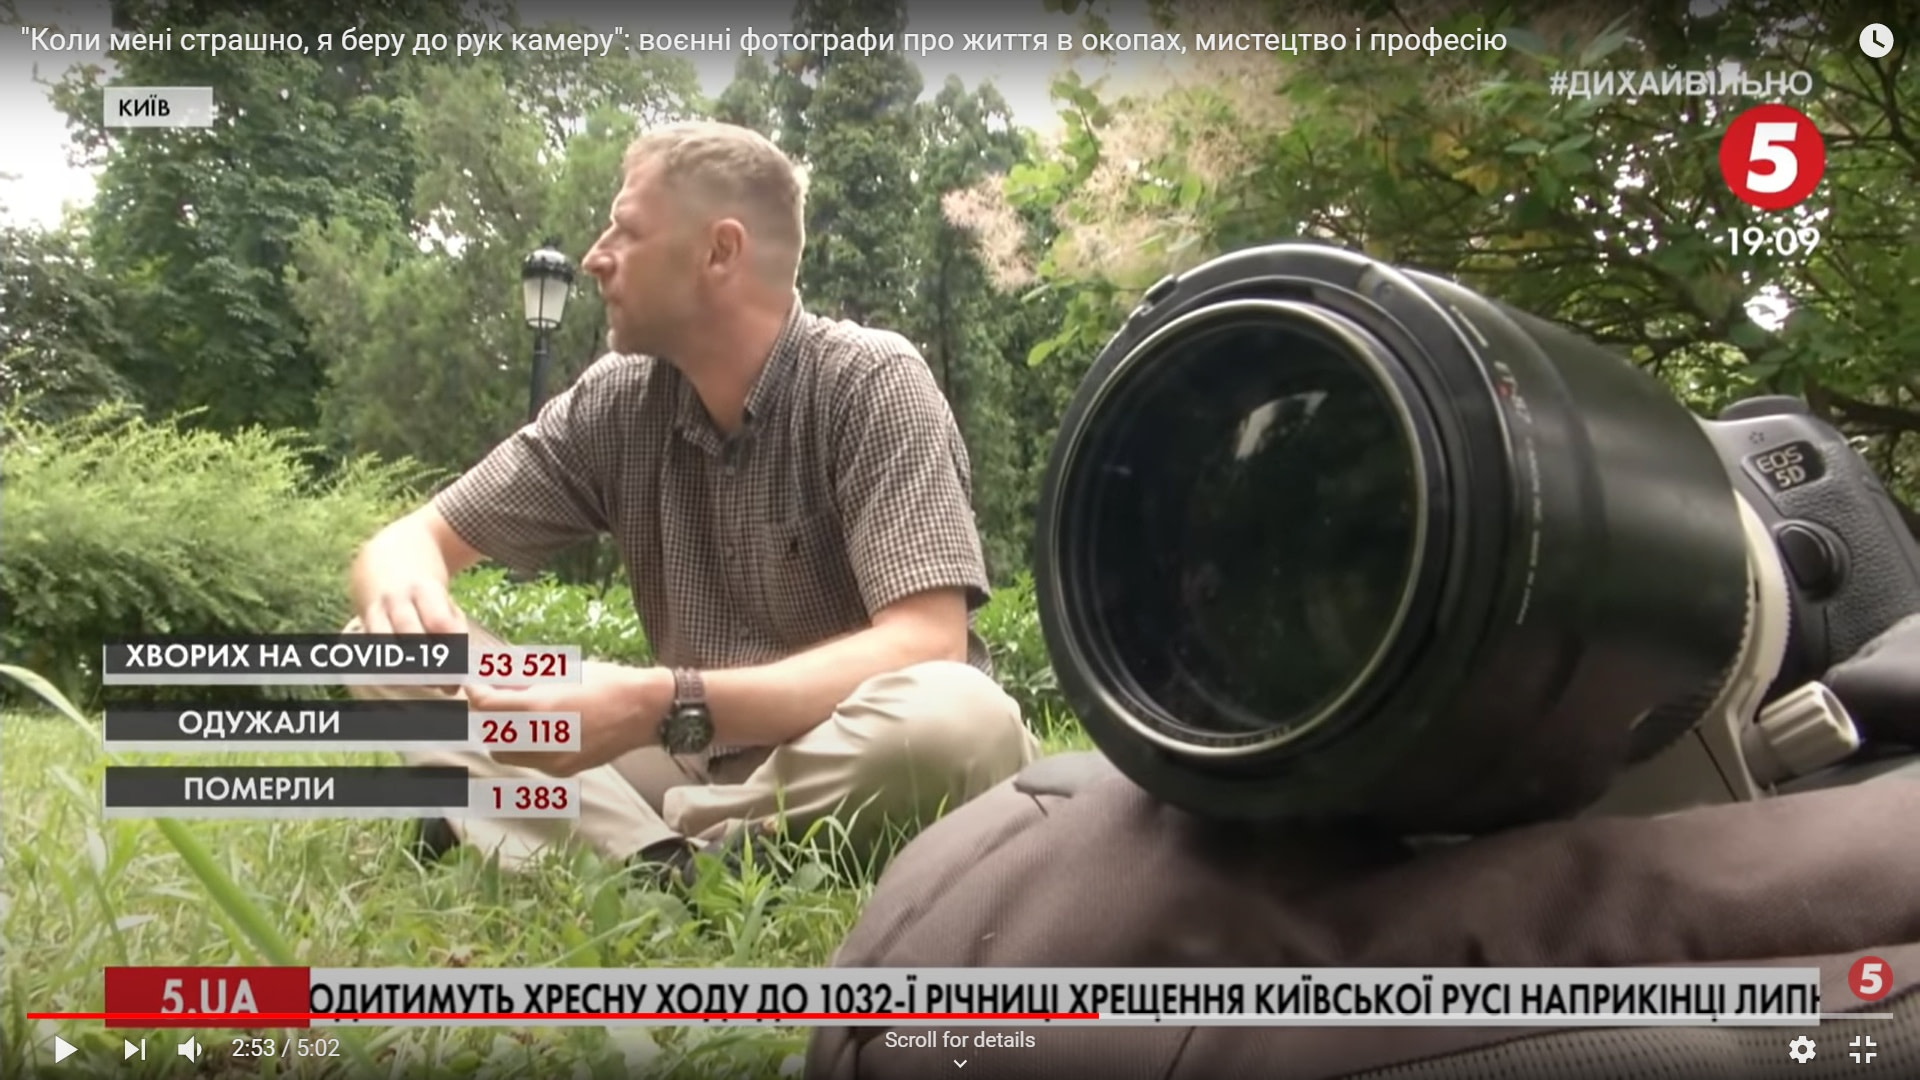 Military war ukrainian photographer Andriy Dubchak interview for 5tv